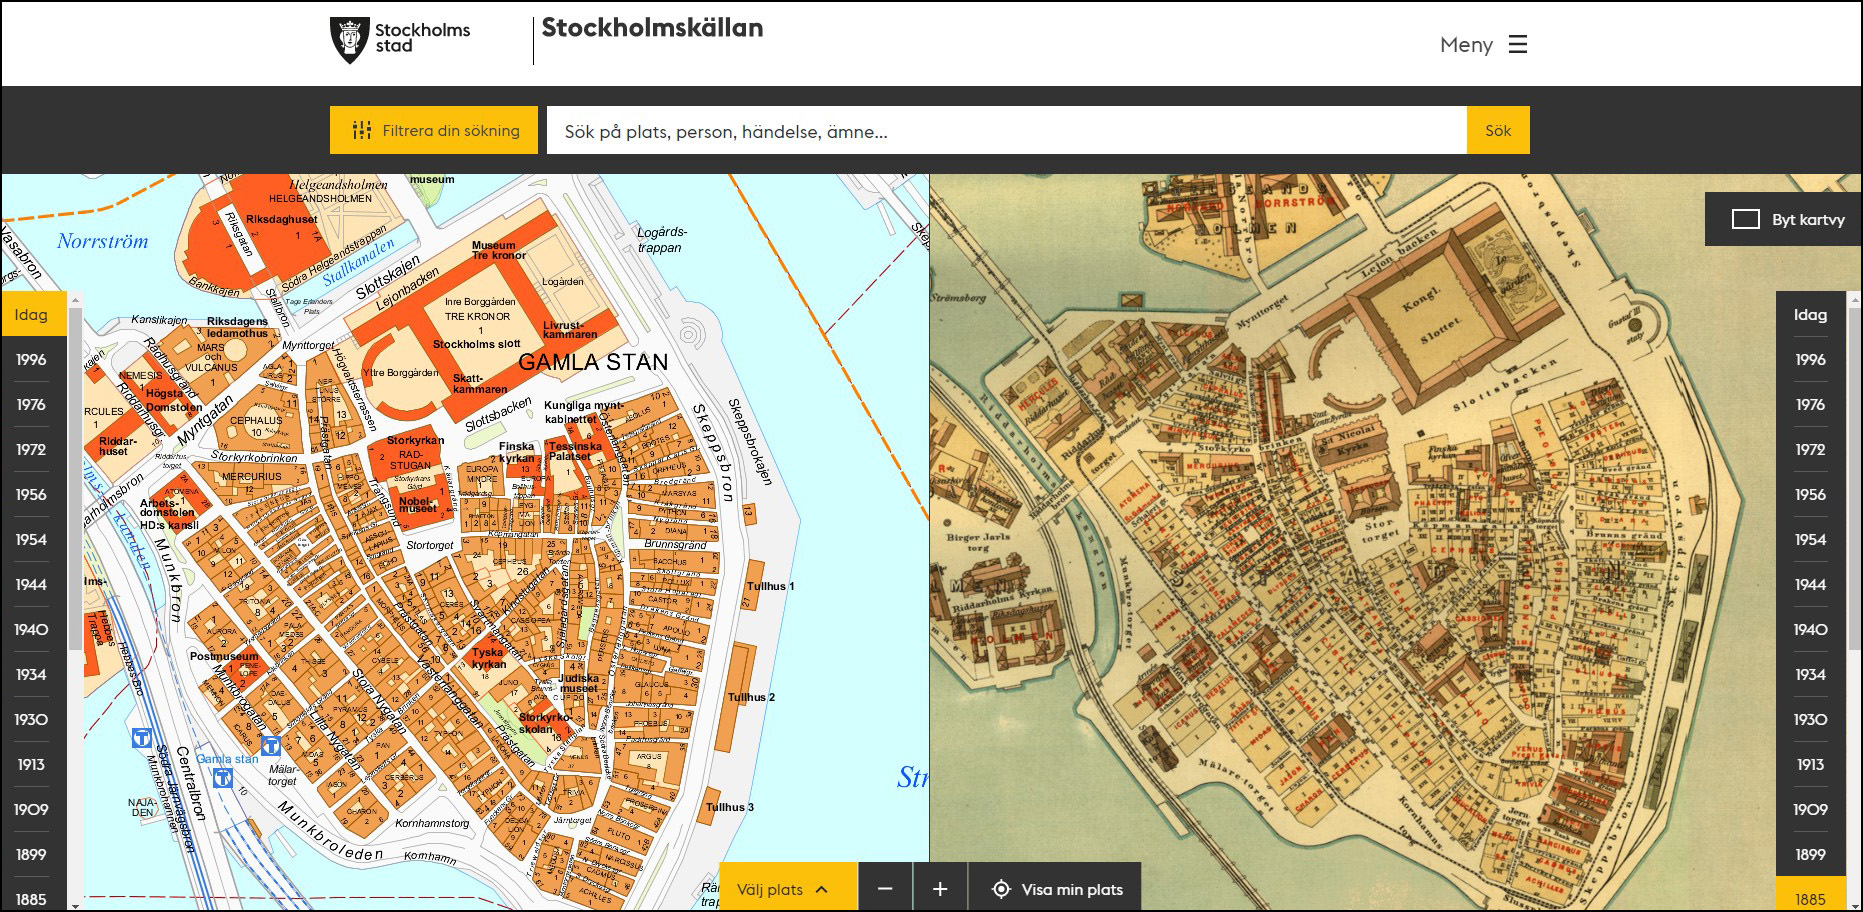 Jämför historiska kartor på Stockholmskällan